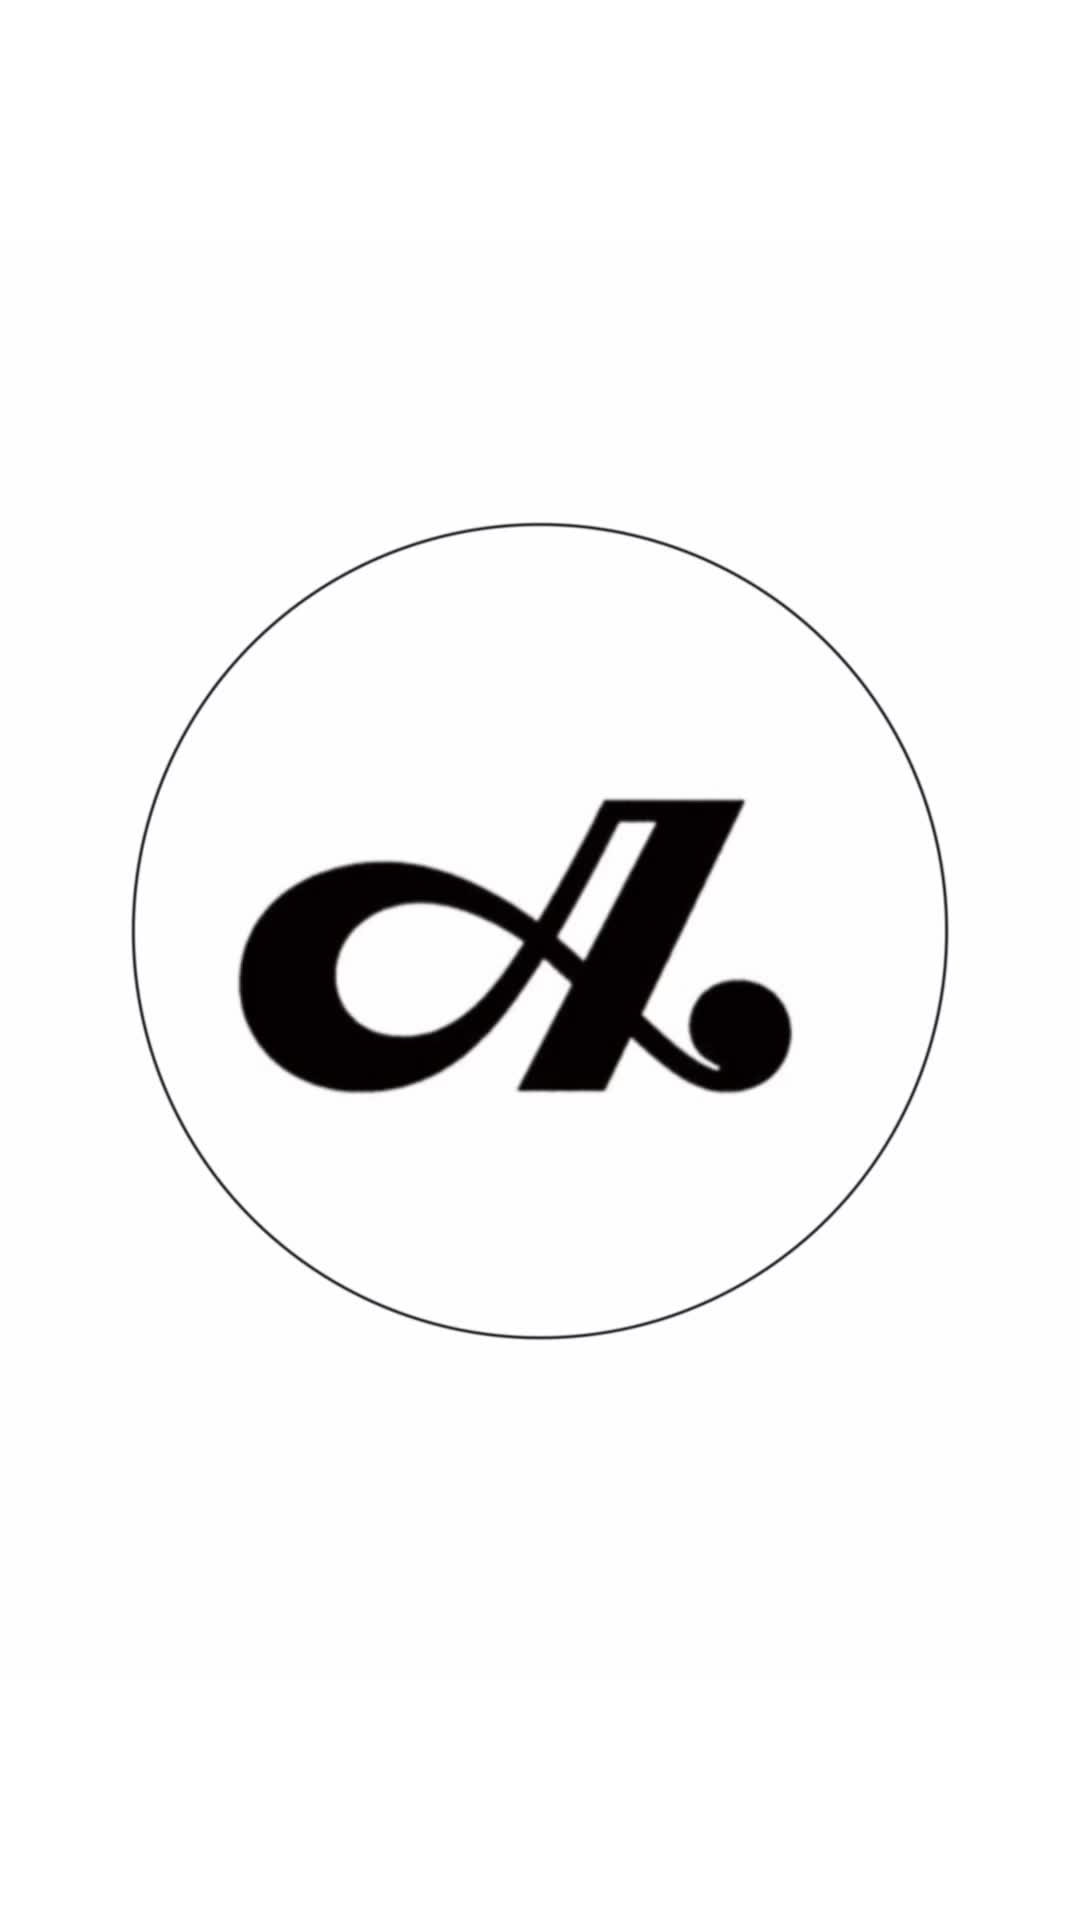 #标志设计 #logo设计 #字母logo设计 #logo设计素材